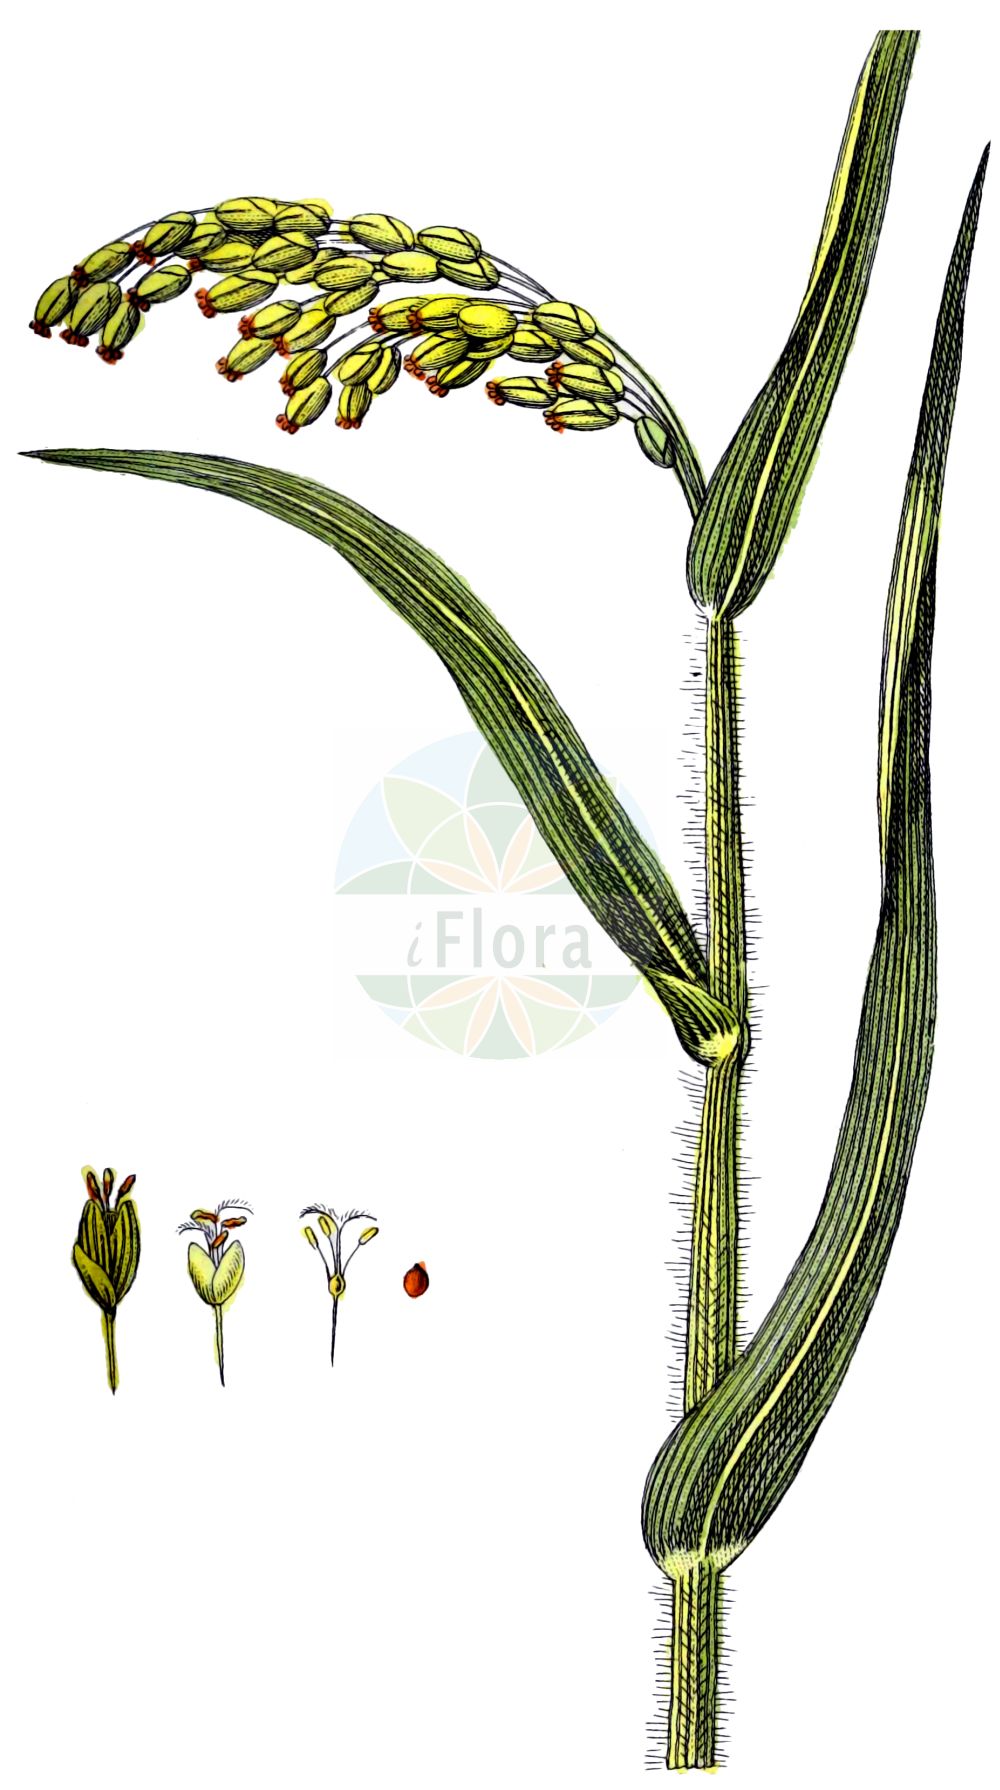 Historische Abbildung von Panicum miliaceum (Rispen-Hirse - Common Millet). Das Bild zeigt Blatt, Bluete, Frucht und Same. ---- Historical Drawing of Panicum miliaceum (Rispen-Hirse - Common Millet). The image is showing leaf, flower, fruit and seed.(Panicum miliaceum,Rispen-Hirse,Common Millet,Panicum miliaceum,Rispen-Hirse,Gewoehnliche Rispenhirse,Common Millet,Broomcorn Millet,French Millet,Millet Panicgrass,Panic Millet,Proso Millet,True Millet,Wild Proso Millet,Panicum,Hirse,Panicgrass,Poaceae,Süßgräser,Grass family,Blatt,Bluete,Frucht,Same,leaf,flower,fruit,seed,Zorn (1781f))